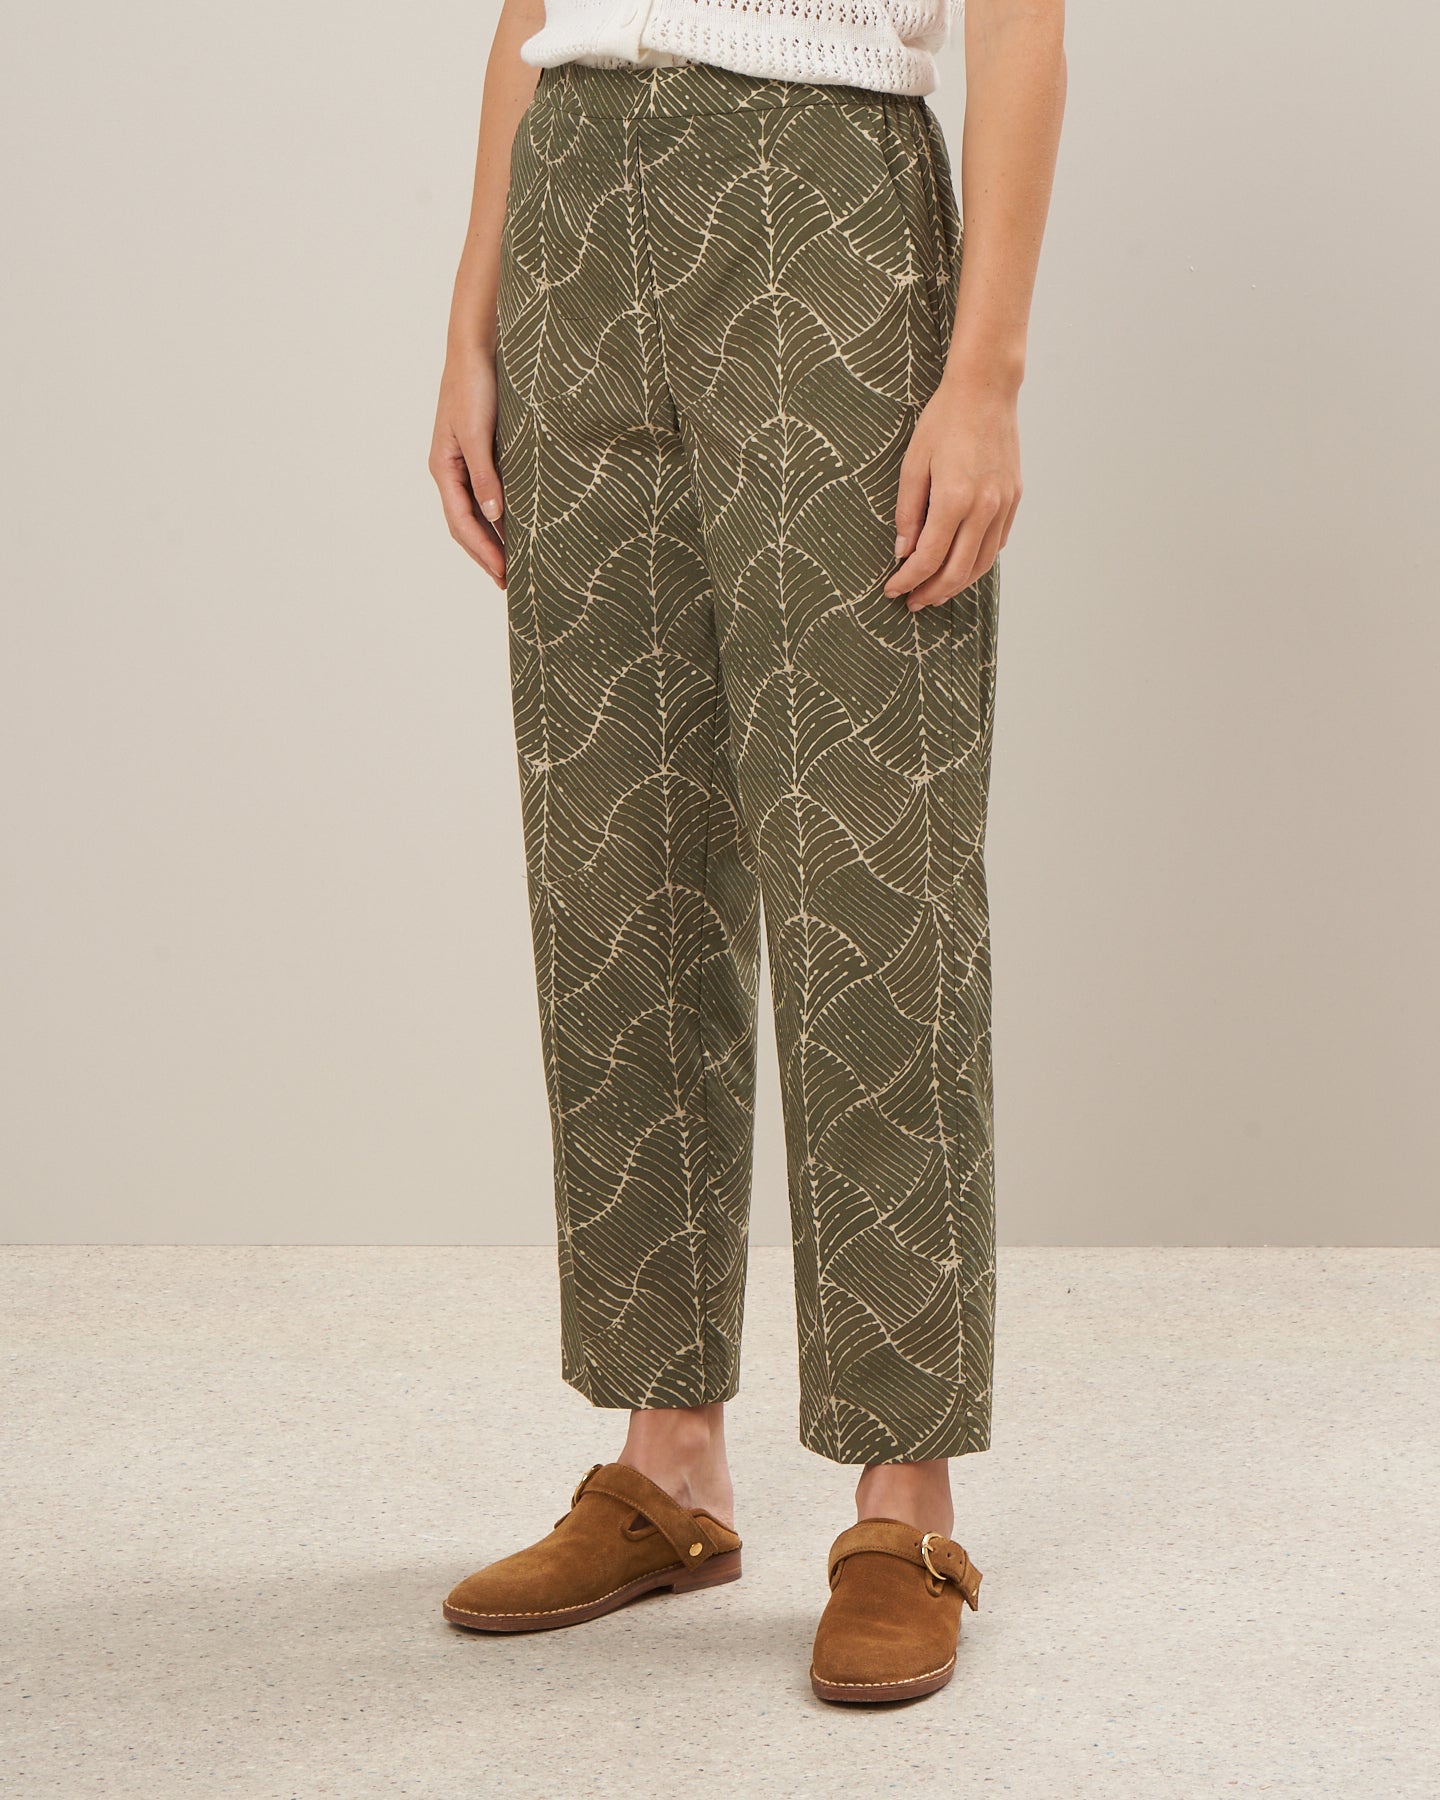 Pantalon Femme en coton imprimé feuilles Beige Pili BBPG623-01